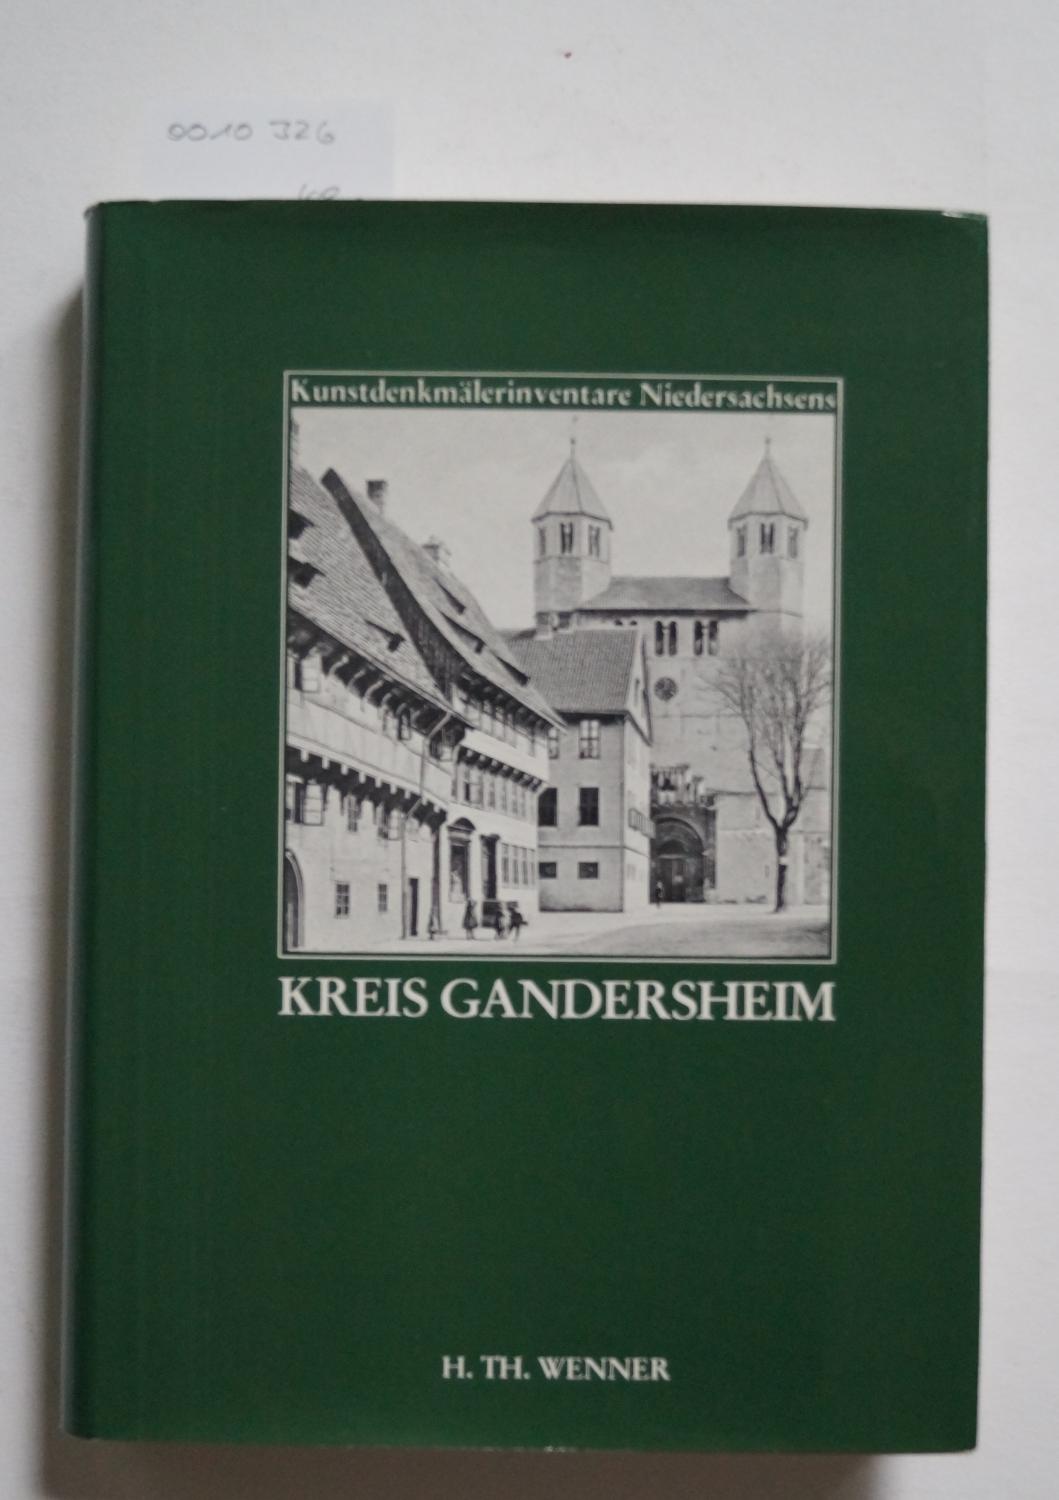 Die Kunstdenkmale des Kreises Gandersheim (Kunstdenkmälerinventare Niedersachsen)